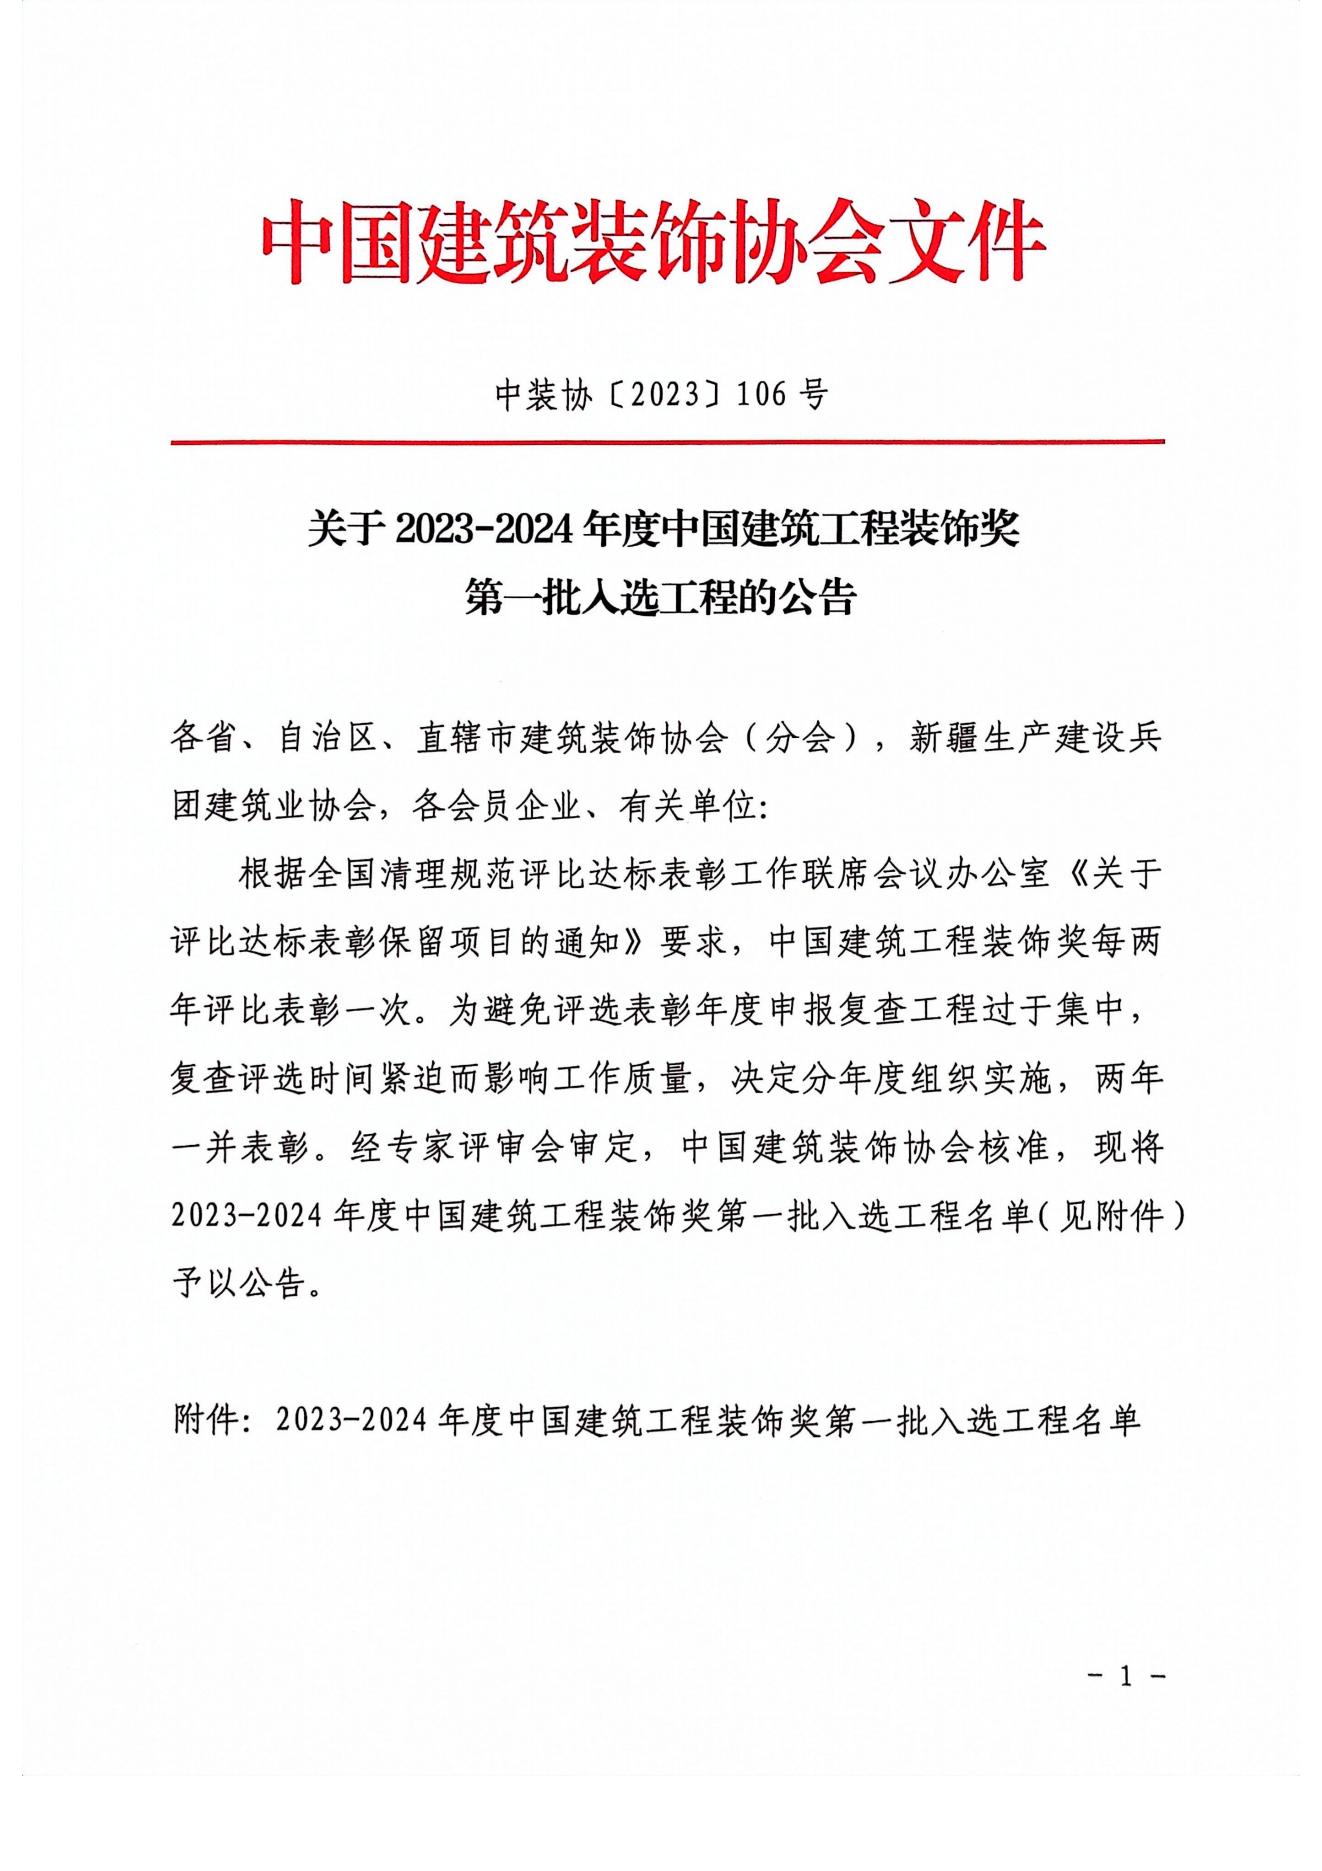 荣获2023-2024年度中国建筑工程装饰奖